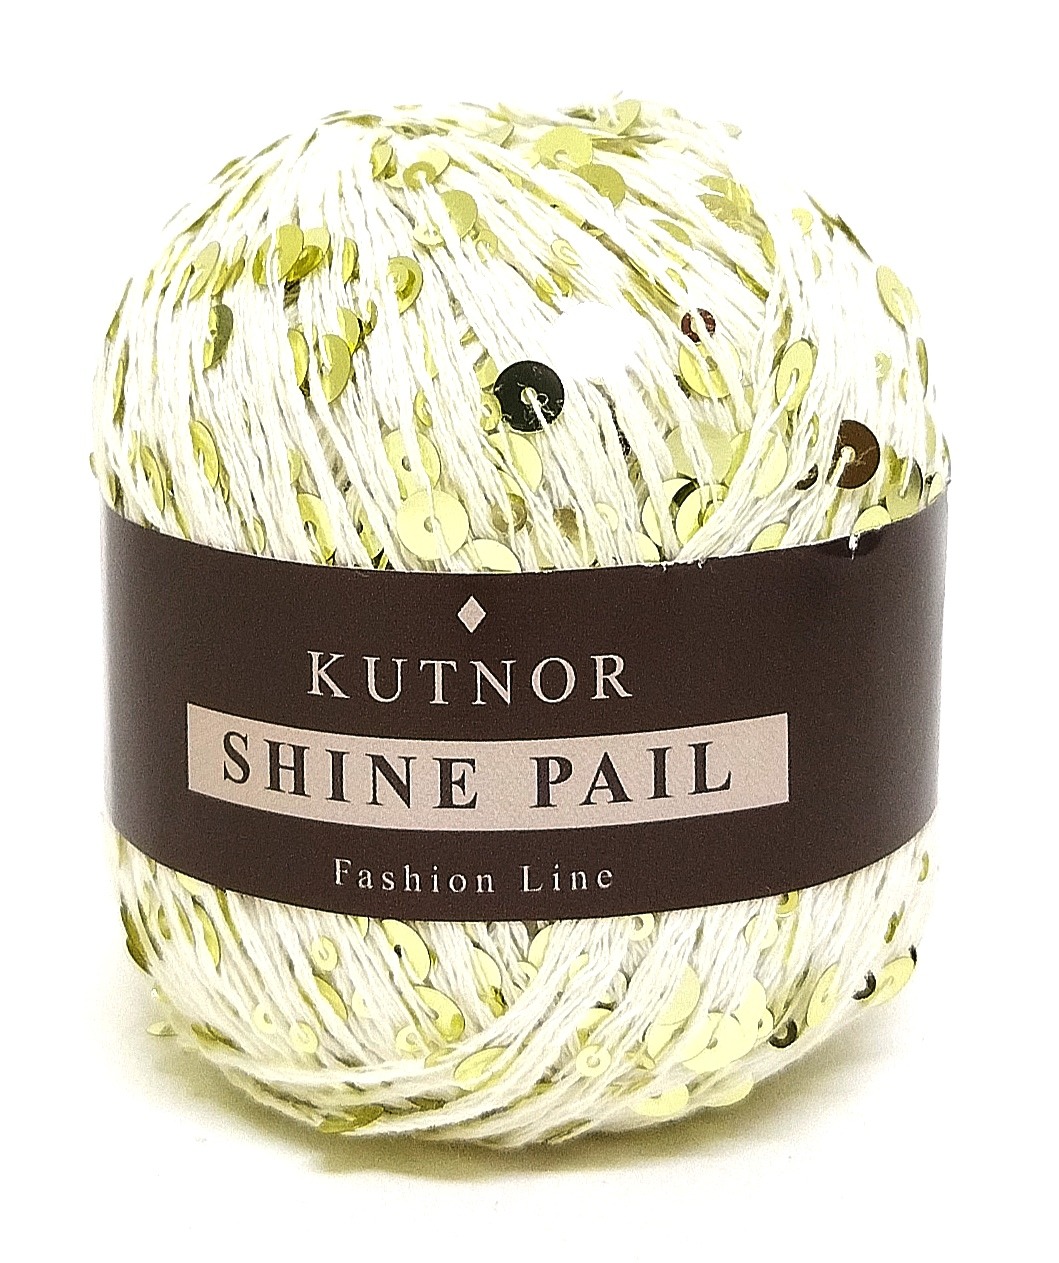 Kutnor Shine Pail пайетки (Кутнор Шайн пайл ) 169-1